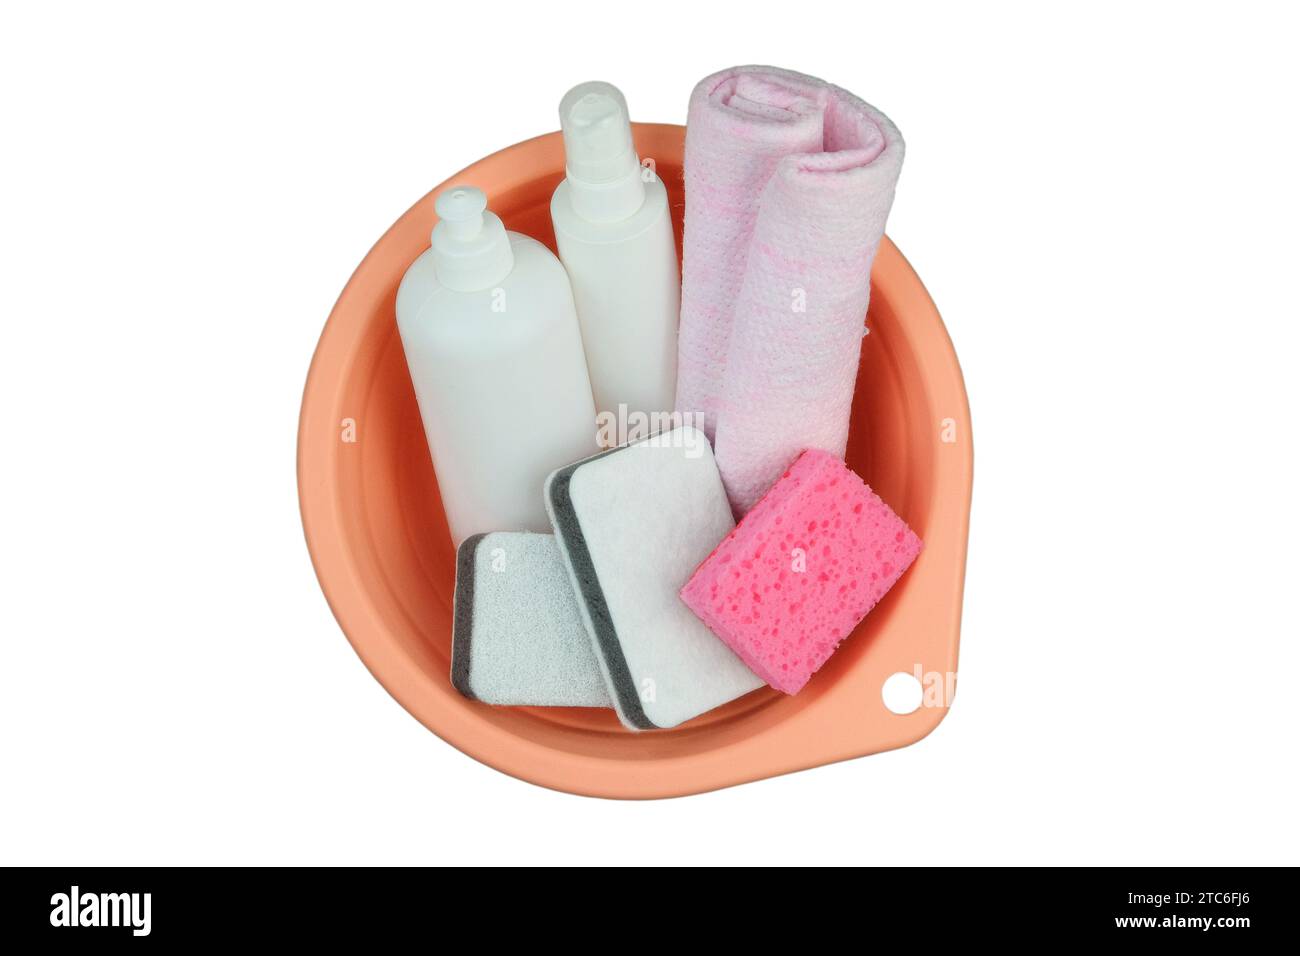 Concept de nettoyage. Bouteilles de détergent avec gants de toilette pour l'entretien ménager dans un bassin rose isolé sur fond blanc. Vue de dessus. Banque D'Images